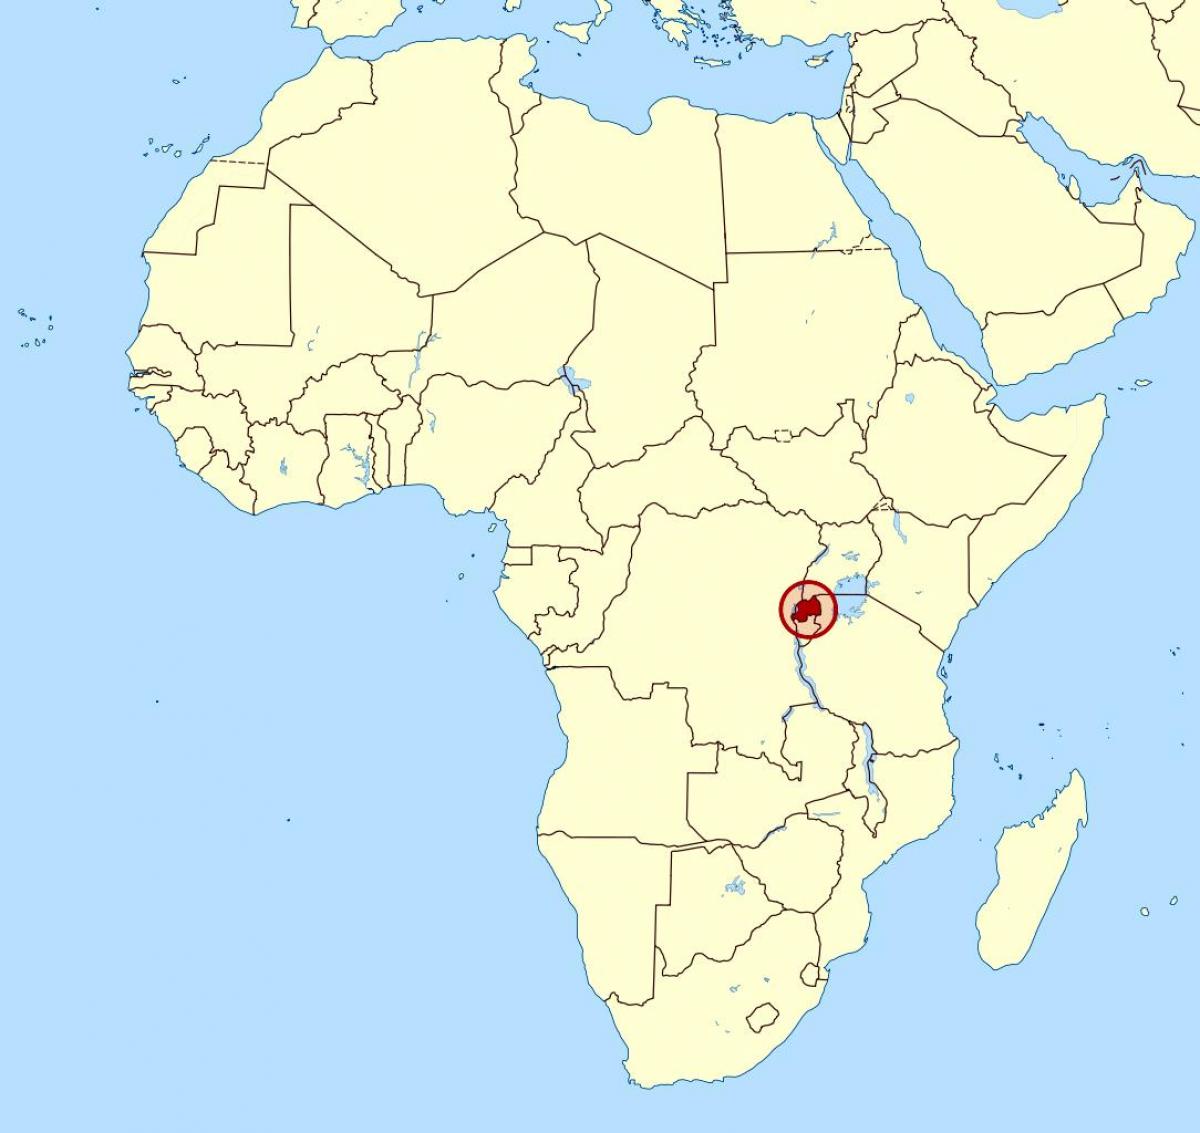 térkép Ruanda afrika